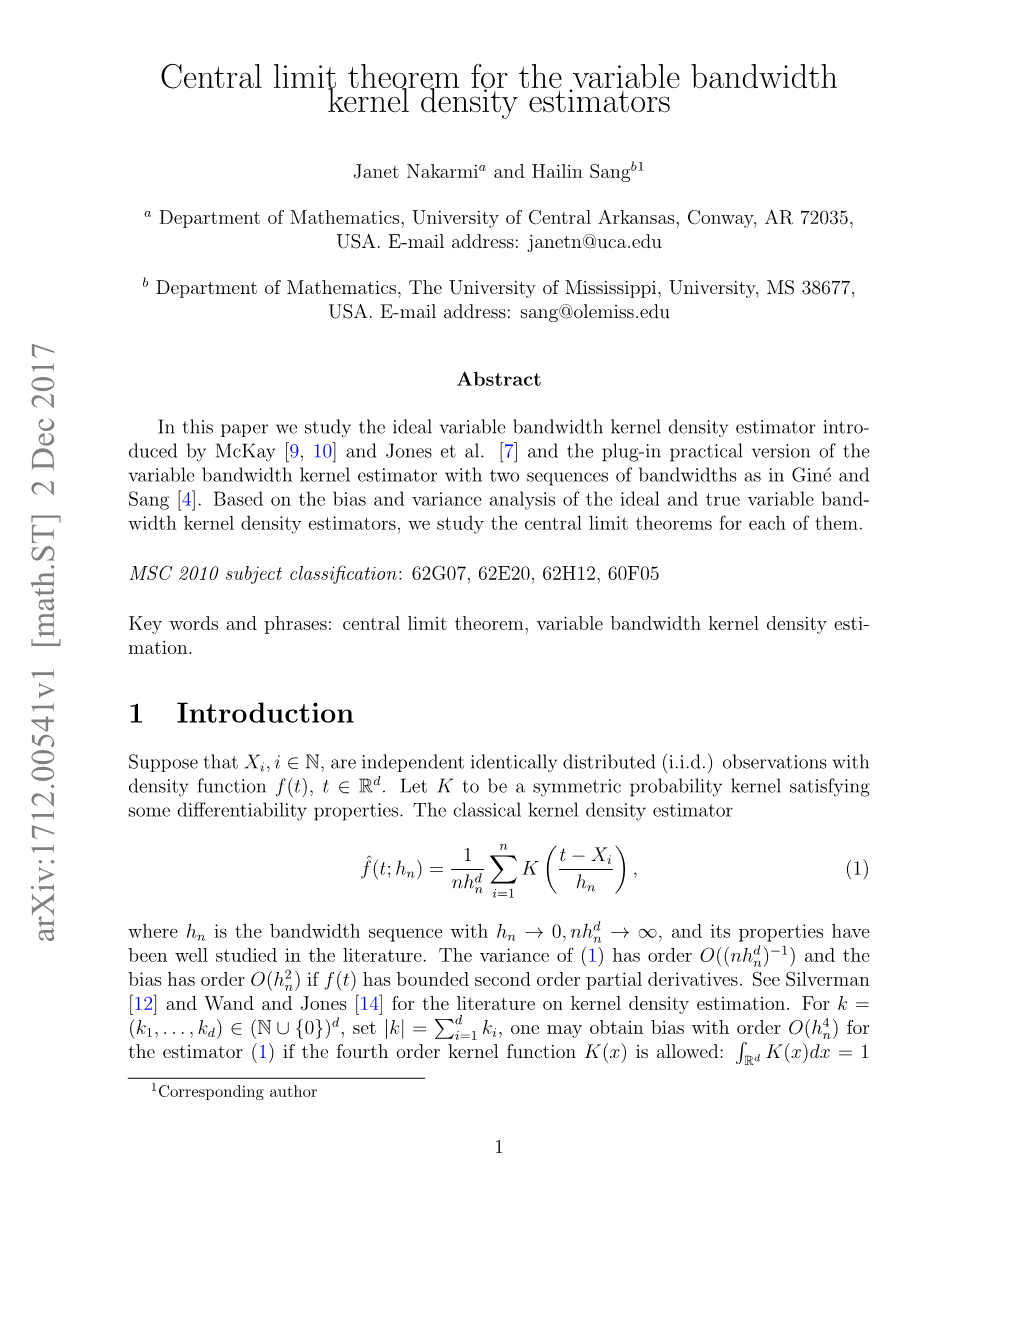 Central Limit Theorem for the Variable Bandwidth Kernel Density Estimators Arxiv:1712.00541V1 [Math.ST] 2 Dec 2017